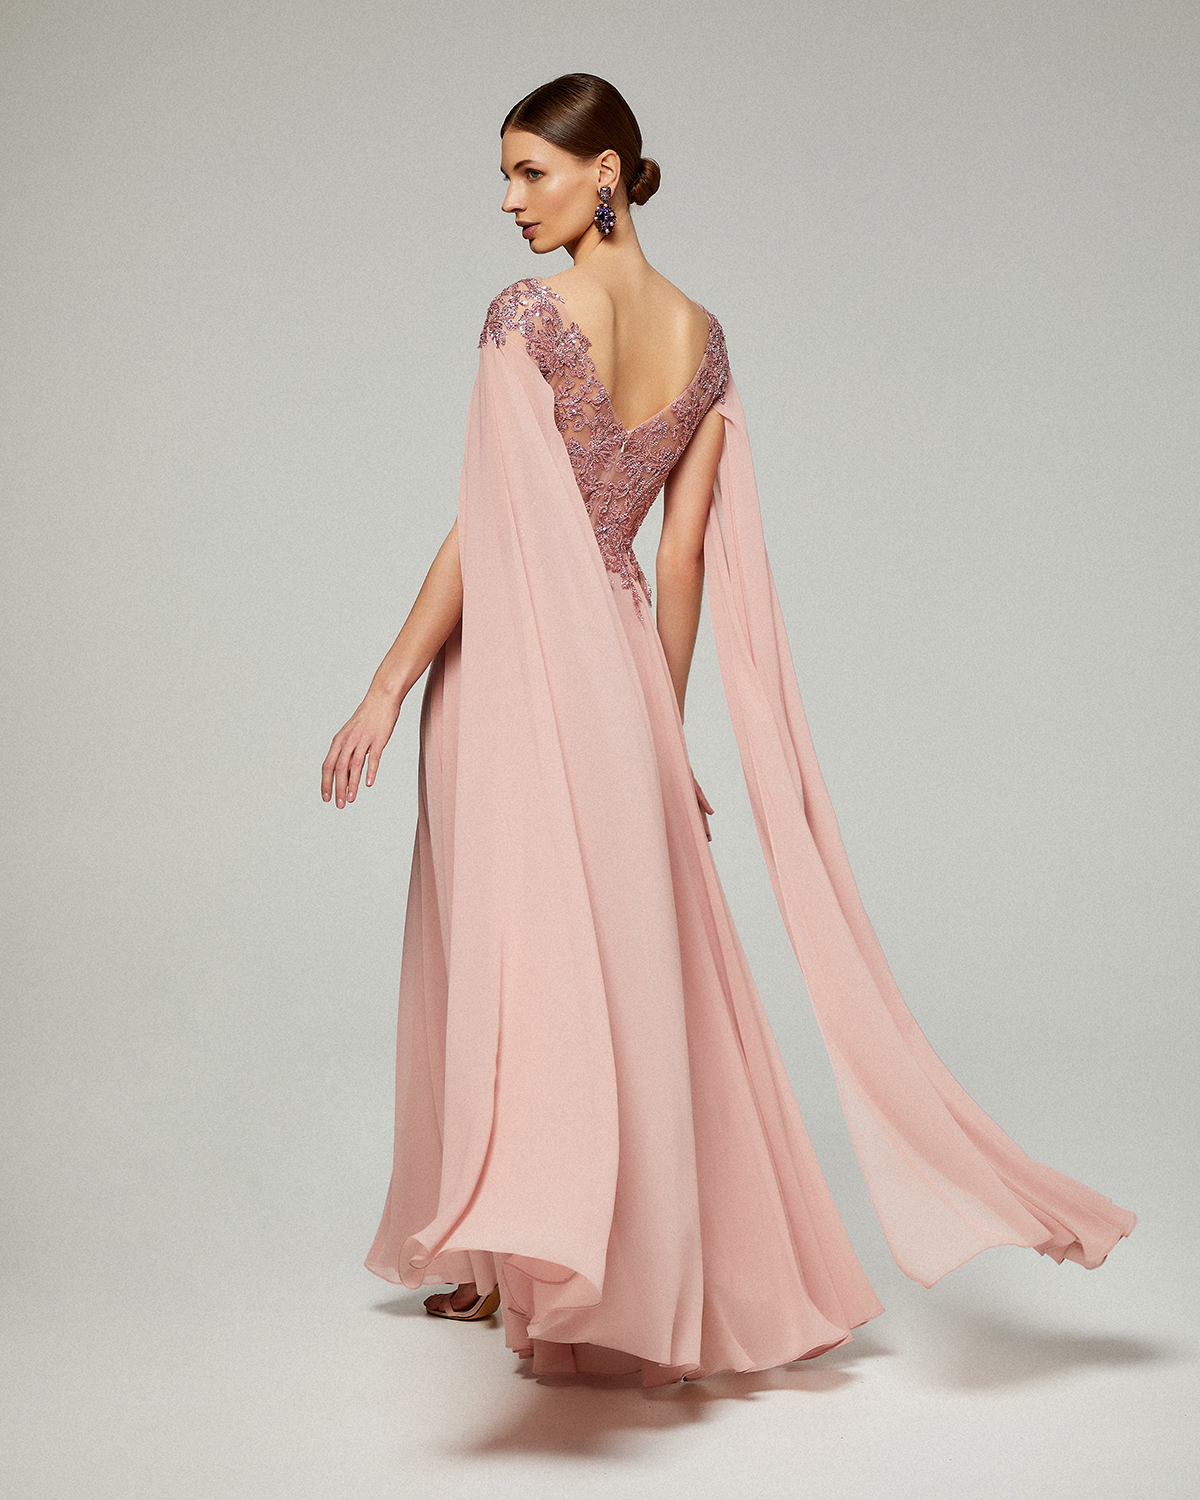 Κλασικά Φορέματα / Κλασικό φόρεμα μακρύ  από μουσελίνα με ολοκέντητο δαντελένιο τοπ με μακριά μανίκια